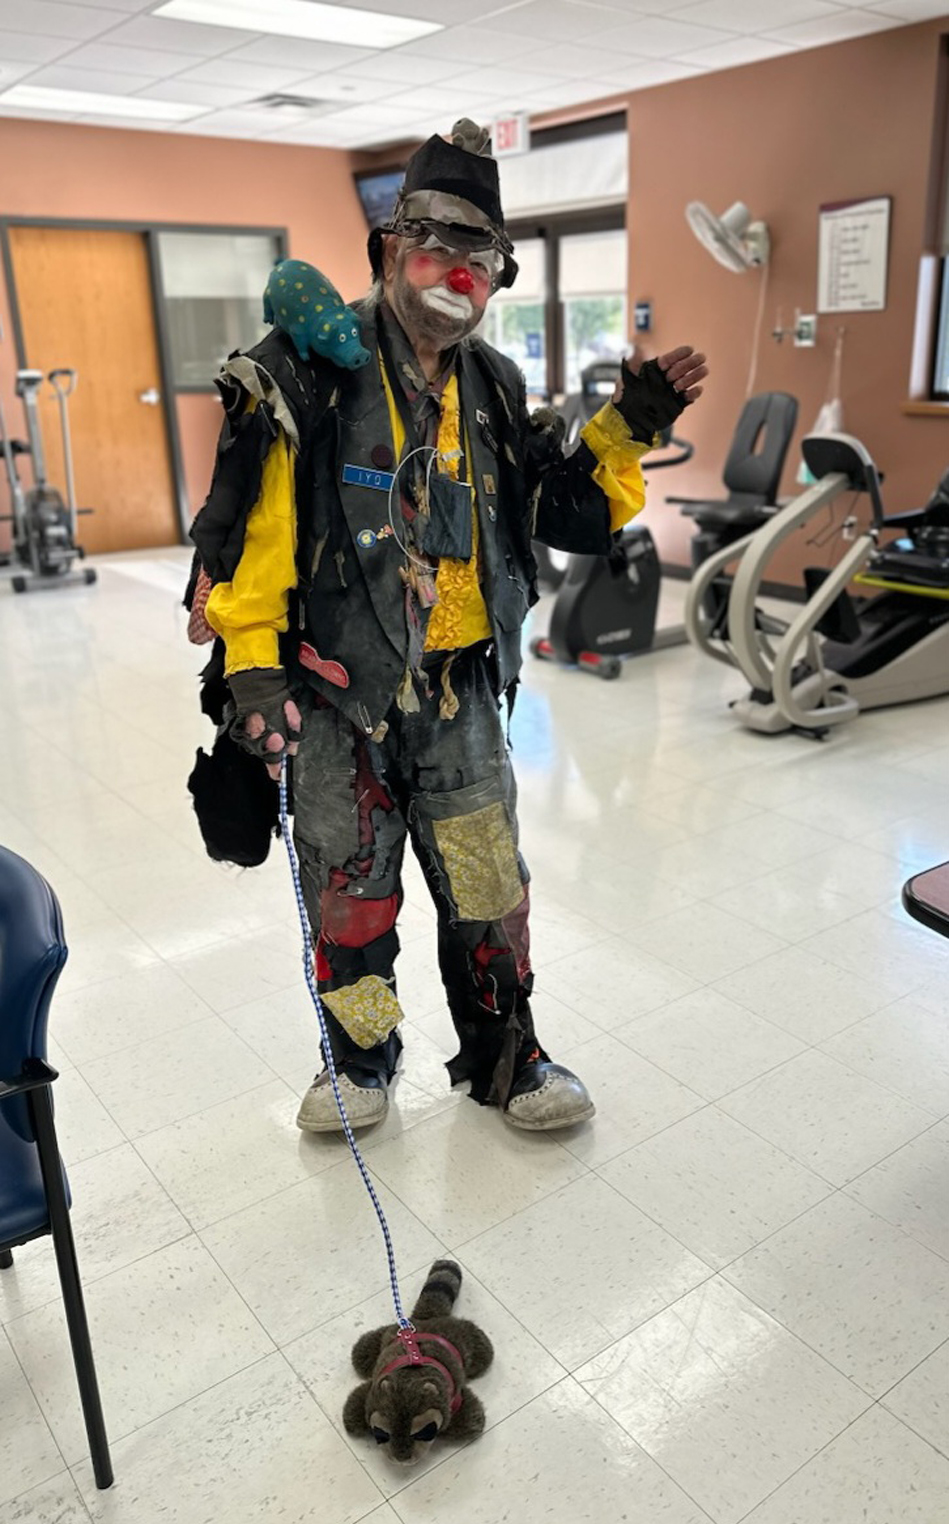 clown rehab - St. Mary’s Medical Center